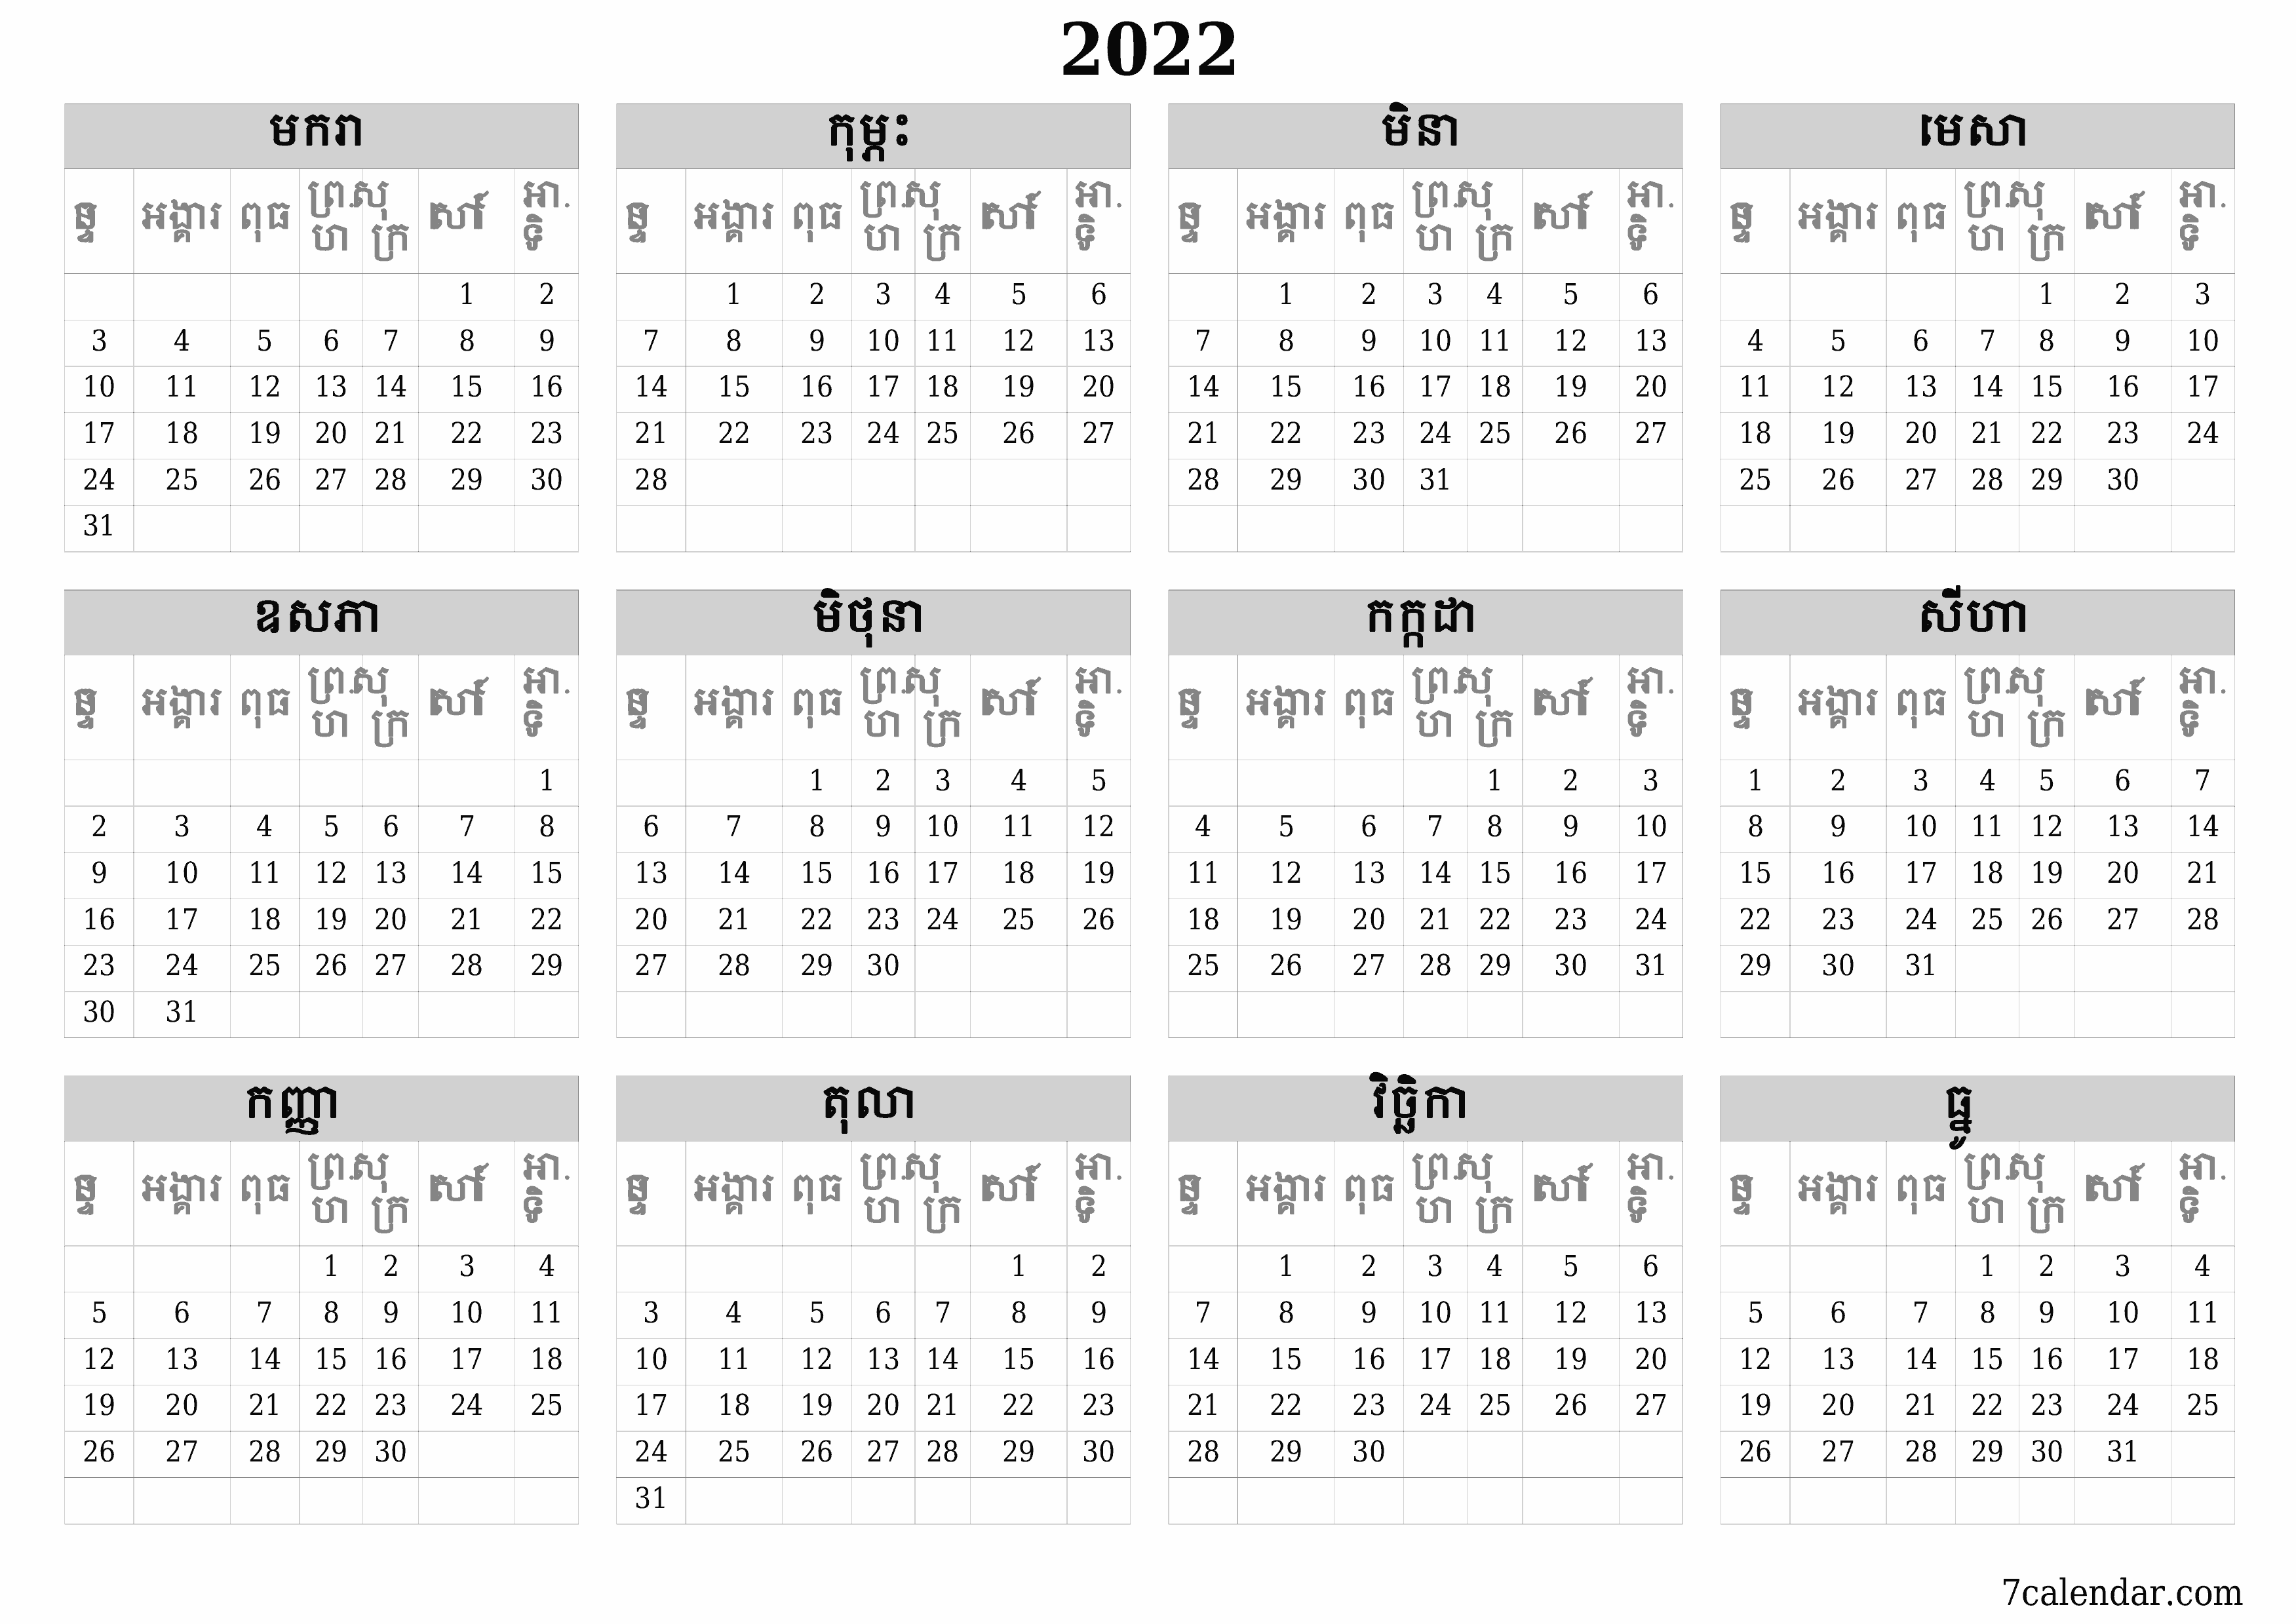 អ្នករៀបចំផែនការប្រចាំឆ្នាំទទេ 2022 ដែលមានកំណត់ចំណាំរក្សាទុកនិងបោះពុម្ពជា PDF PNG Khmer - ៧calendar.com